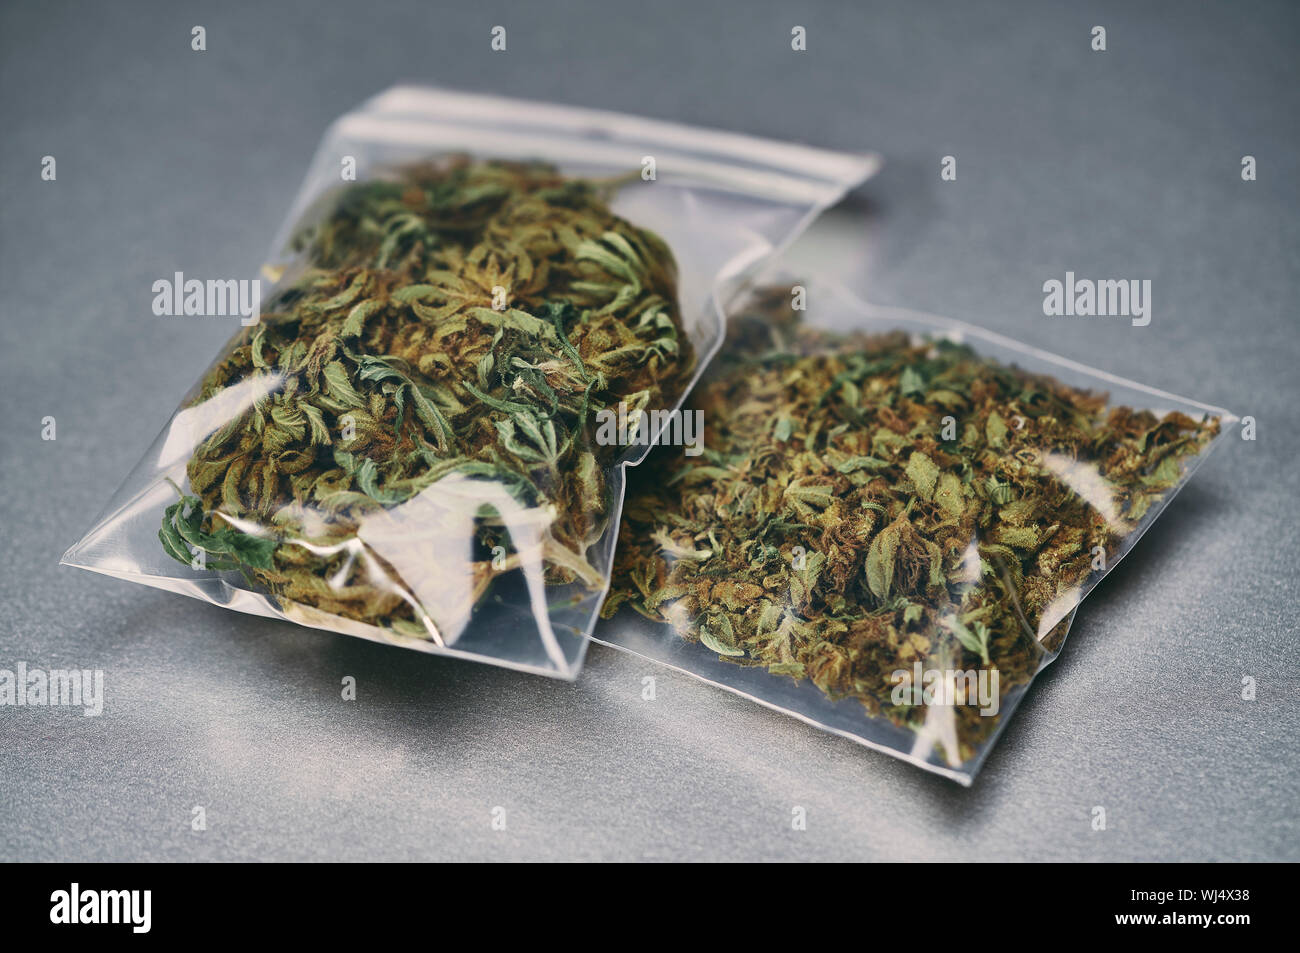 La marijuana dans de petits sacs en plastique Banque D'Images